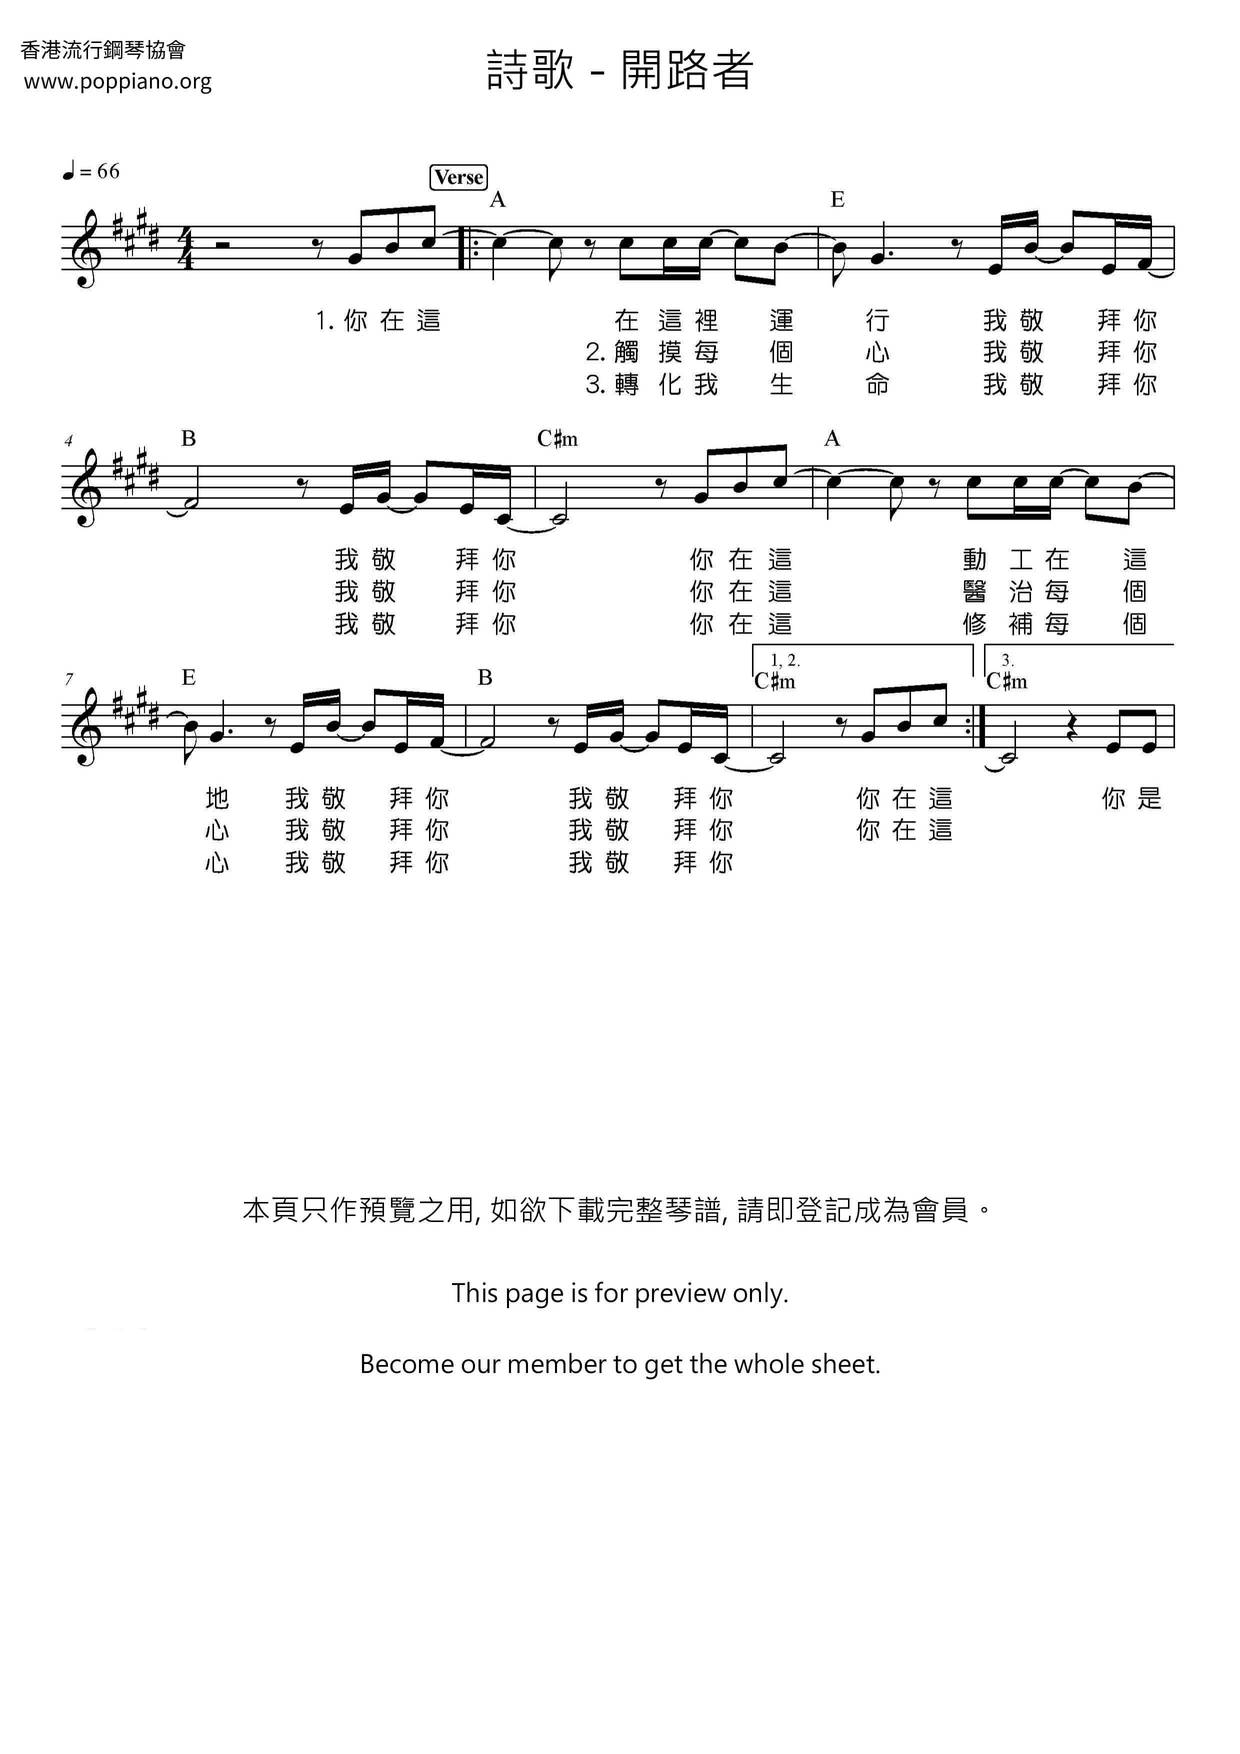 ☆ Spiritual-Way Maker Sheet Music pdf, - Free Score Download ☆